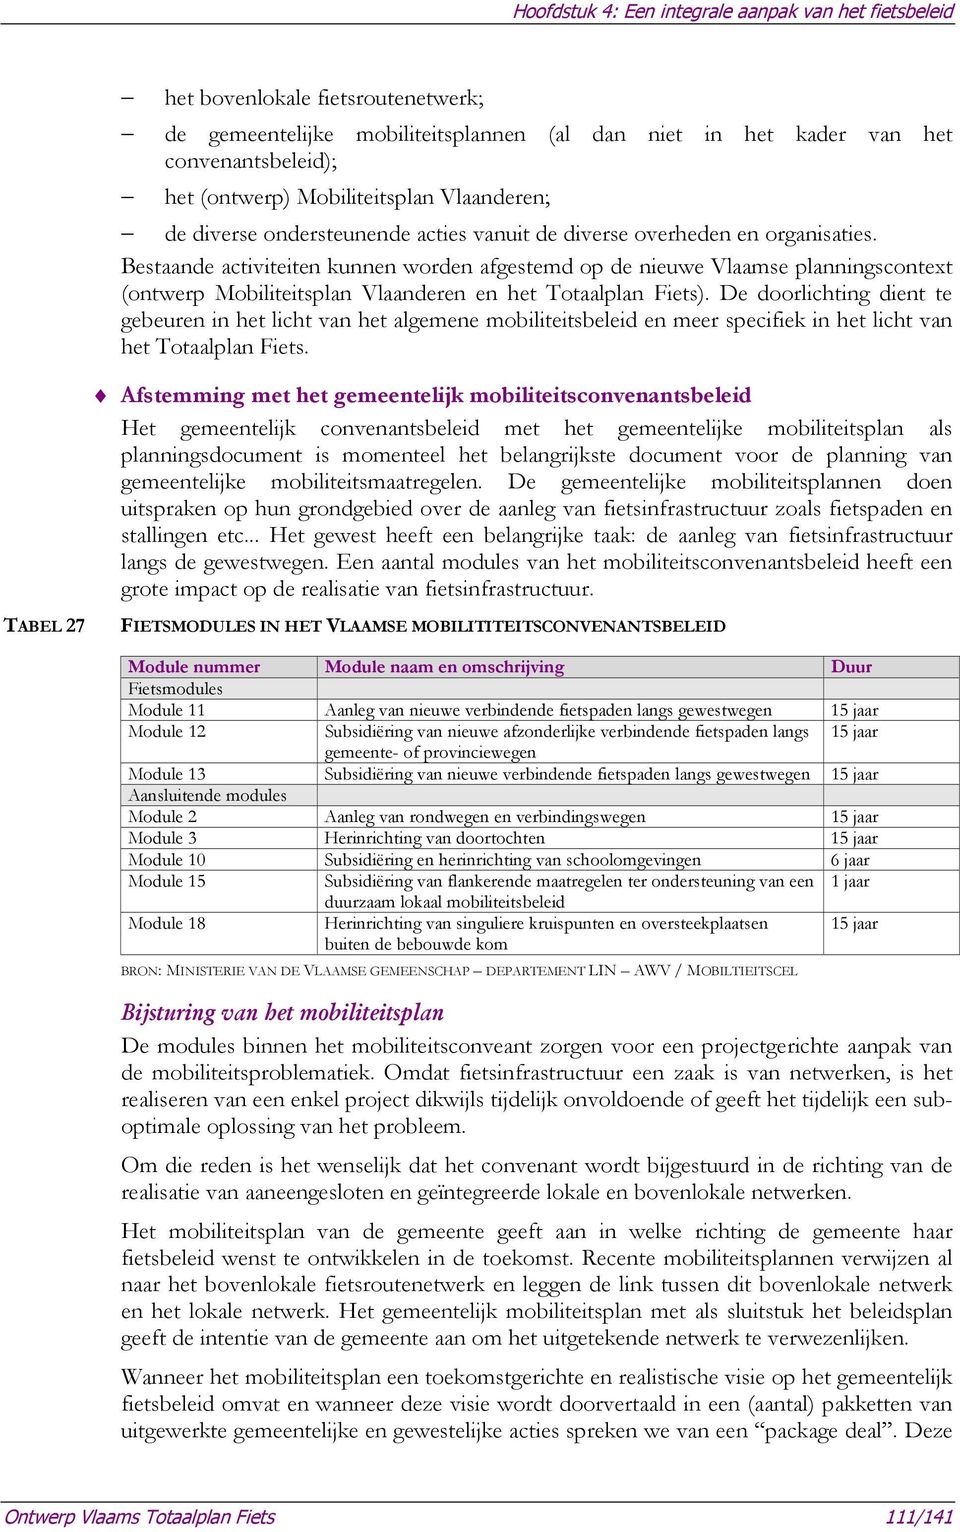 Bestaande activiteiten kunnen worden afgestemd op de nieuwe Vlaamse planningscontext (ontwerp Mobiliteitsplan Vlaanderen en het Totaalplan Fiets).